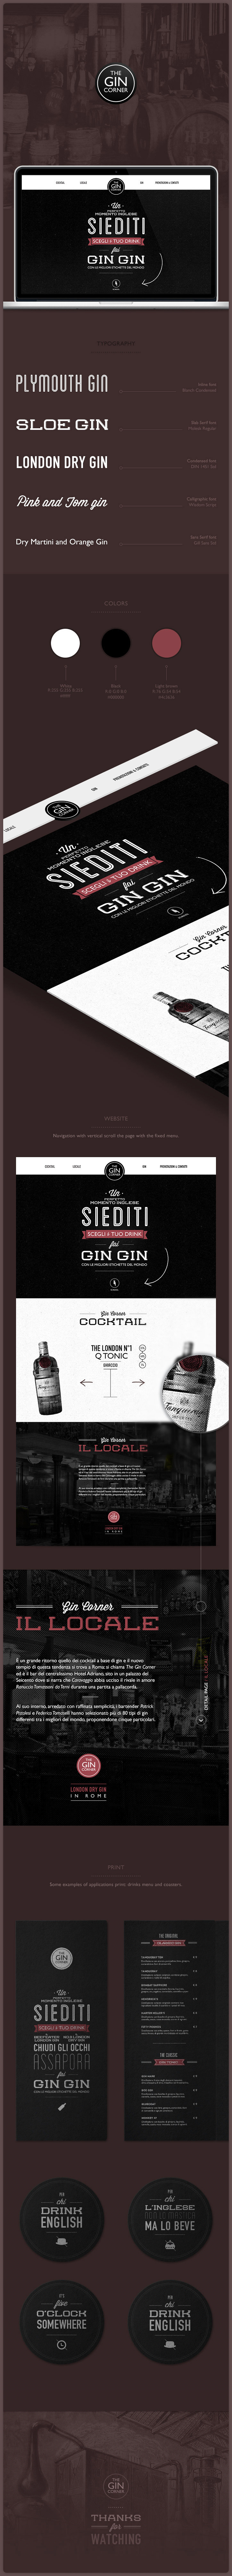 design graphic app art england gin designer Web Interface vintage mock up cool drink Stationery font